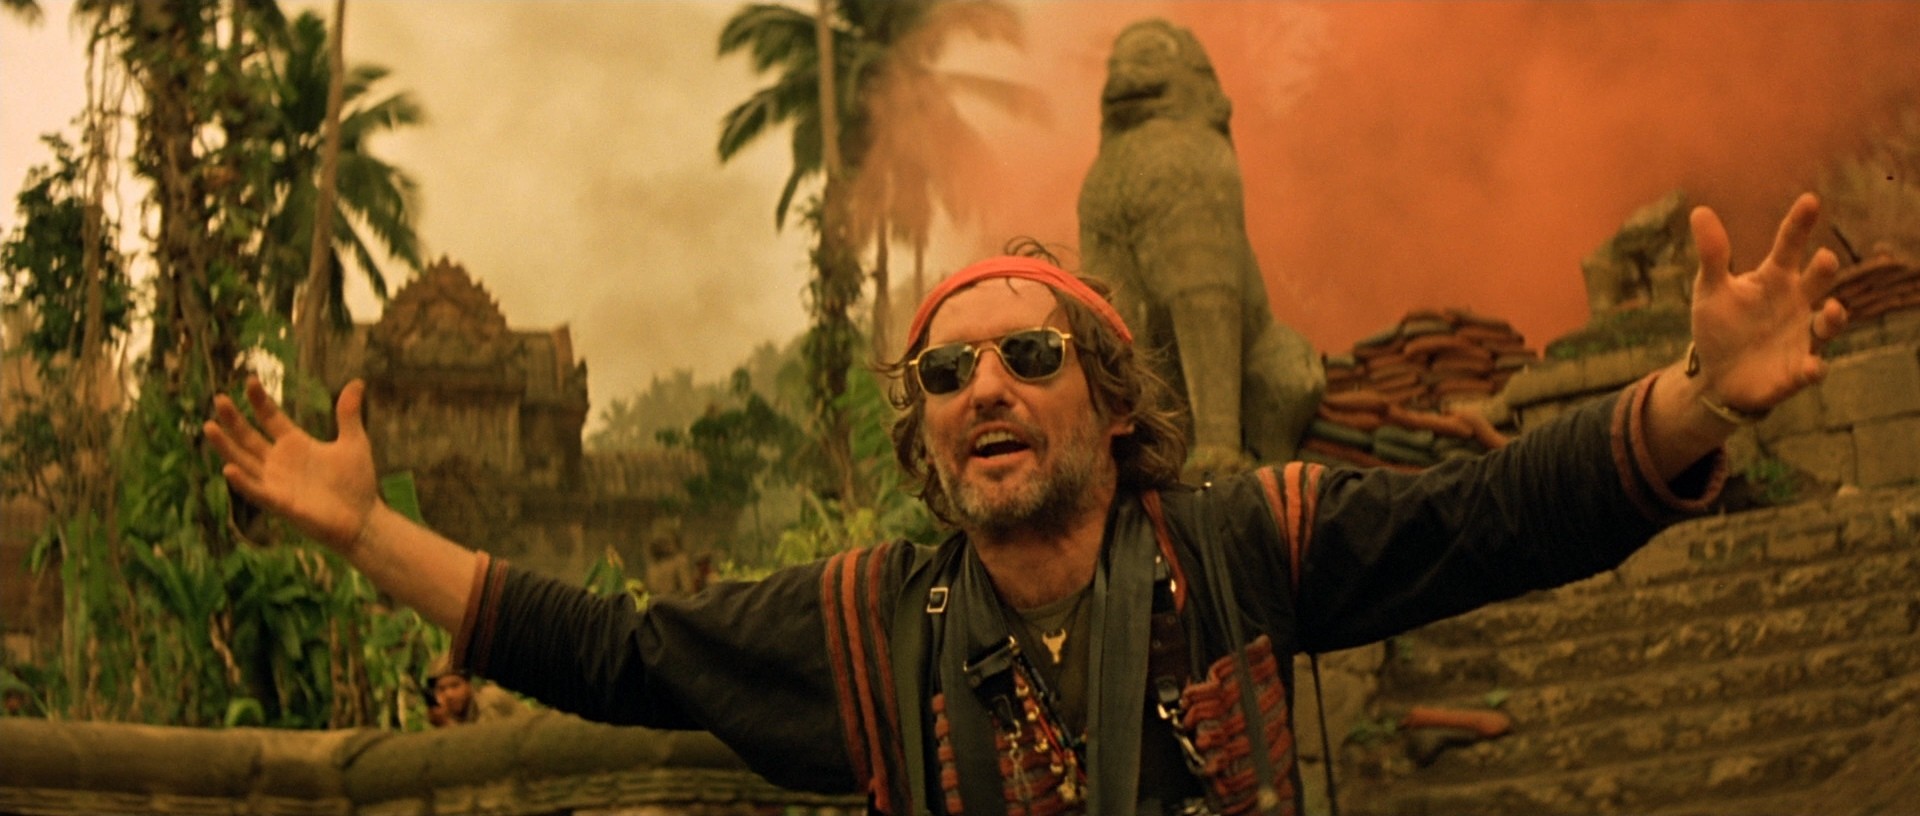 Cena do filme Apocalypse Now (Foto: reprodução)